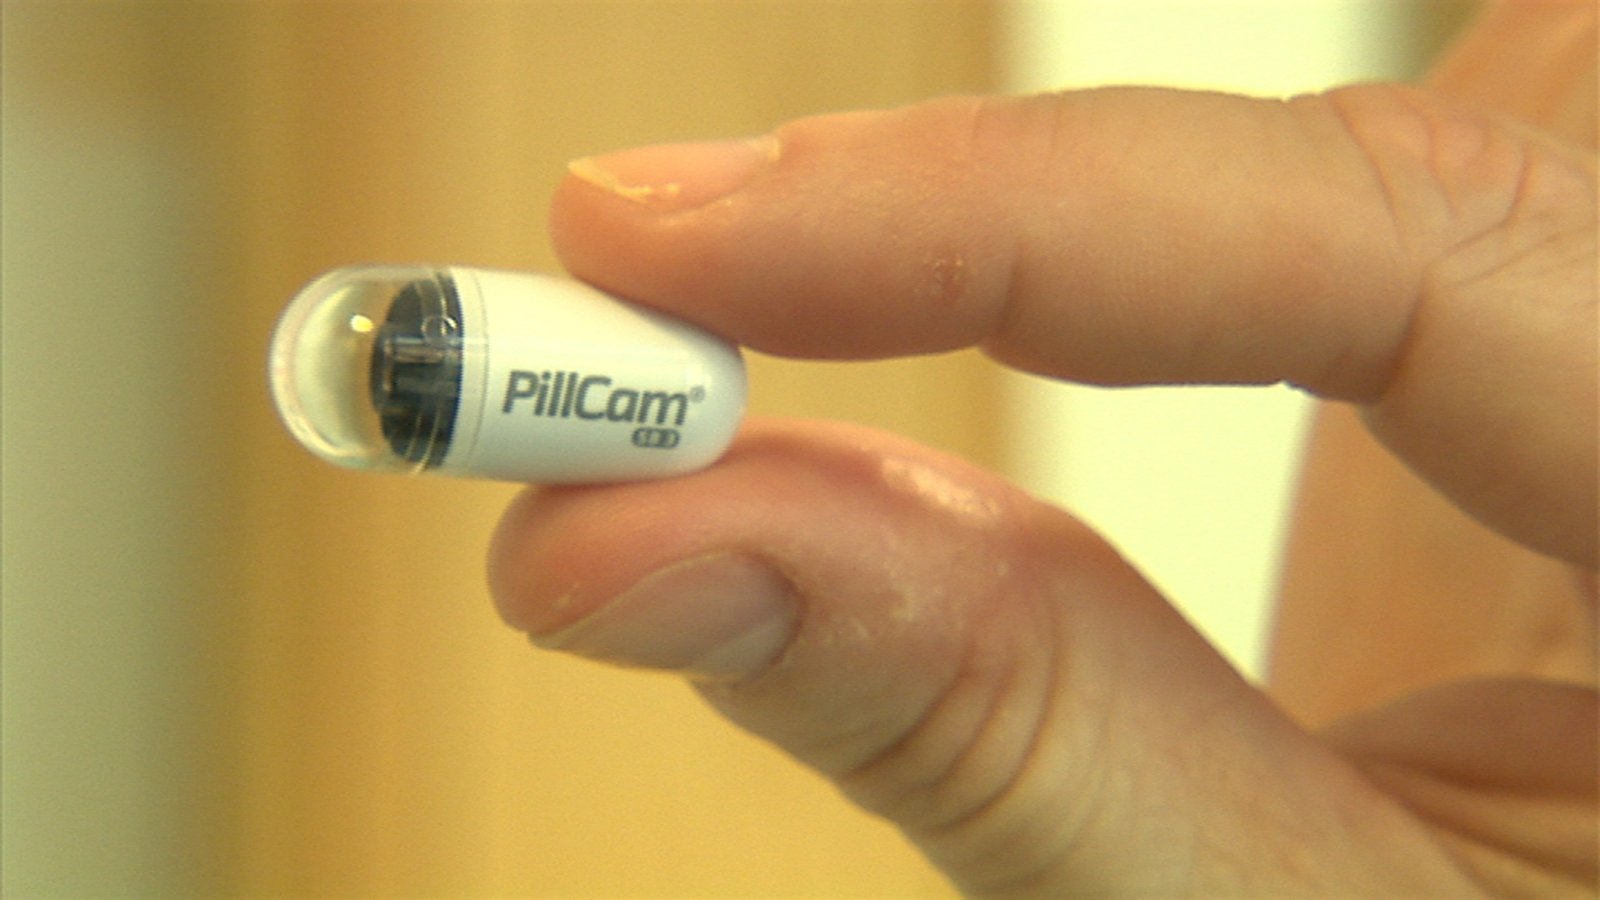 colonoscopy camera pill